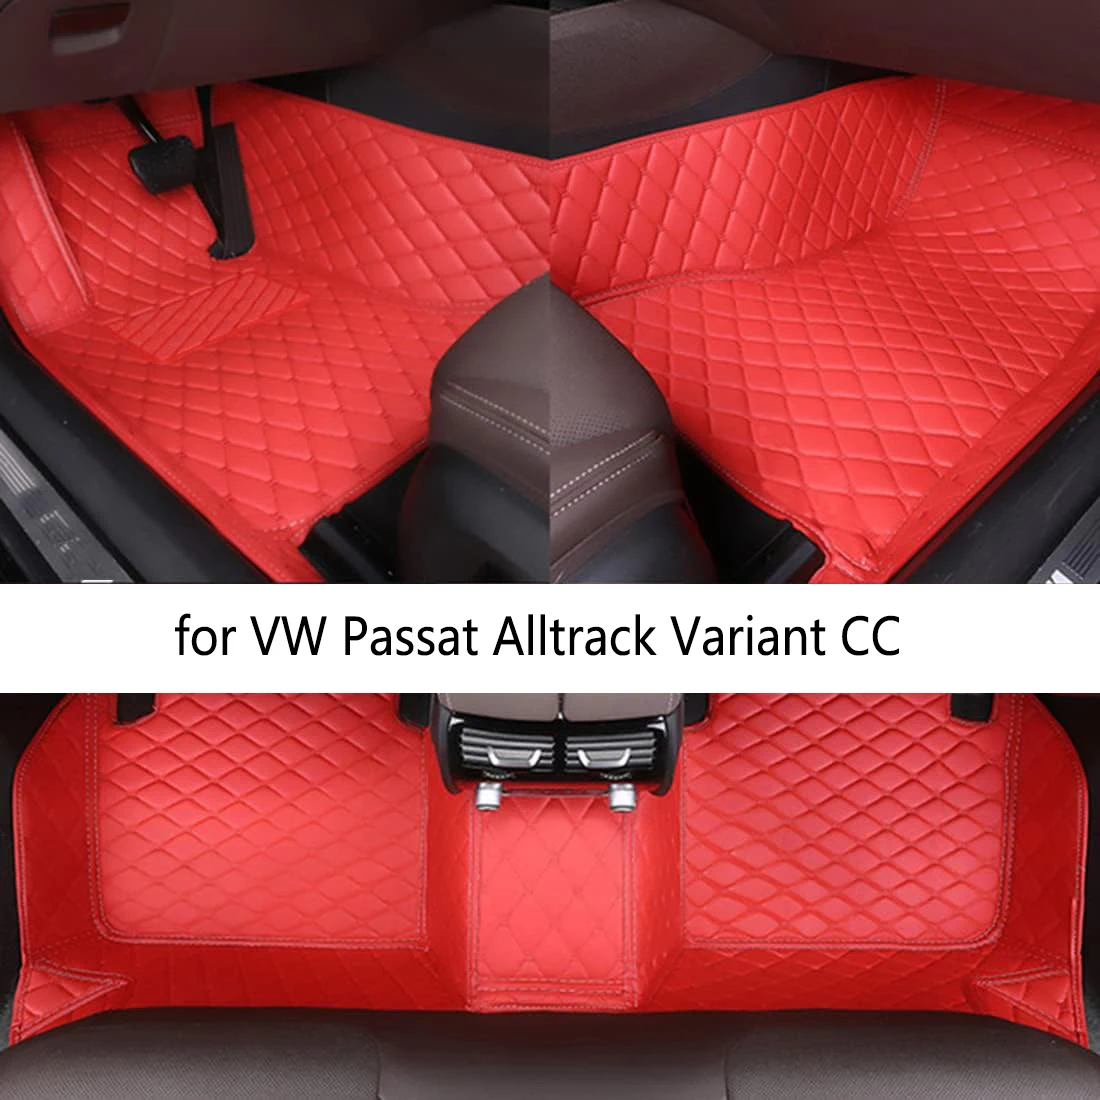 

Автомобильные напольные коврики CRLCRT для VW Passat Alltrack, вариант CC Touareg Scirocco Caddy Jetta POLO, автомобильные аксессуары, детали интерьера